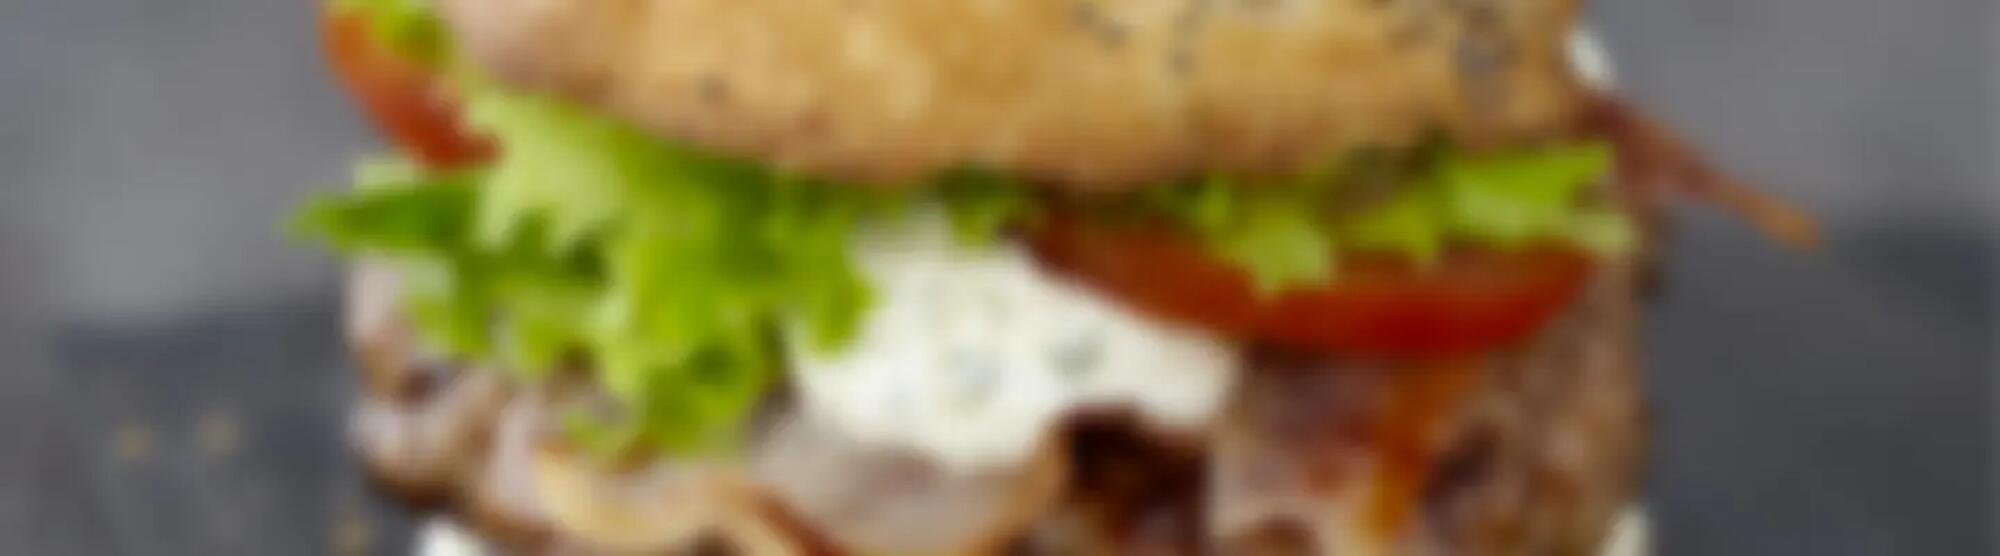 Recette : Burger de bœuf au fromage frais ail & fines herbes